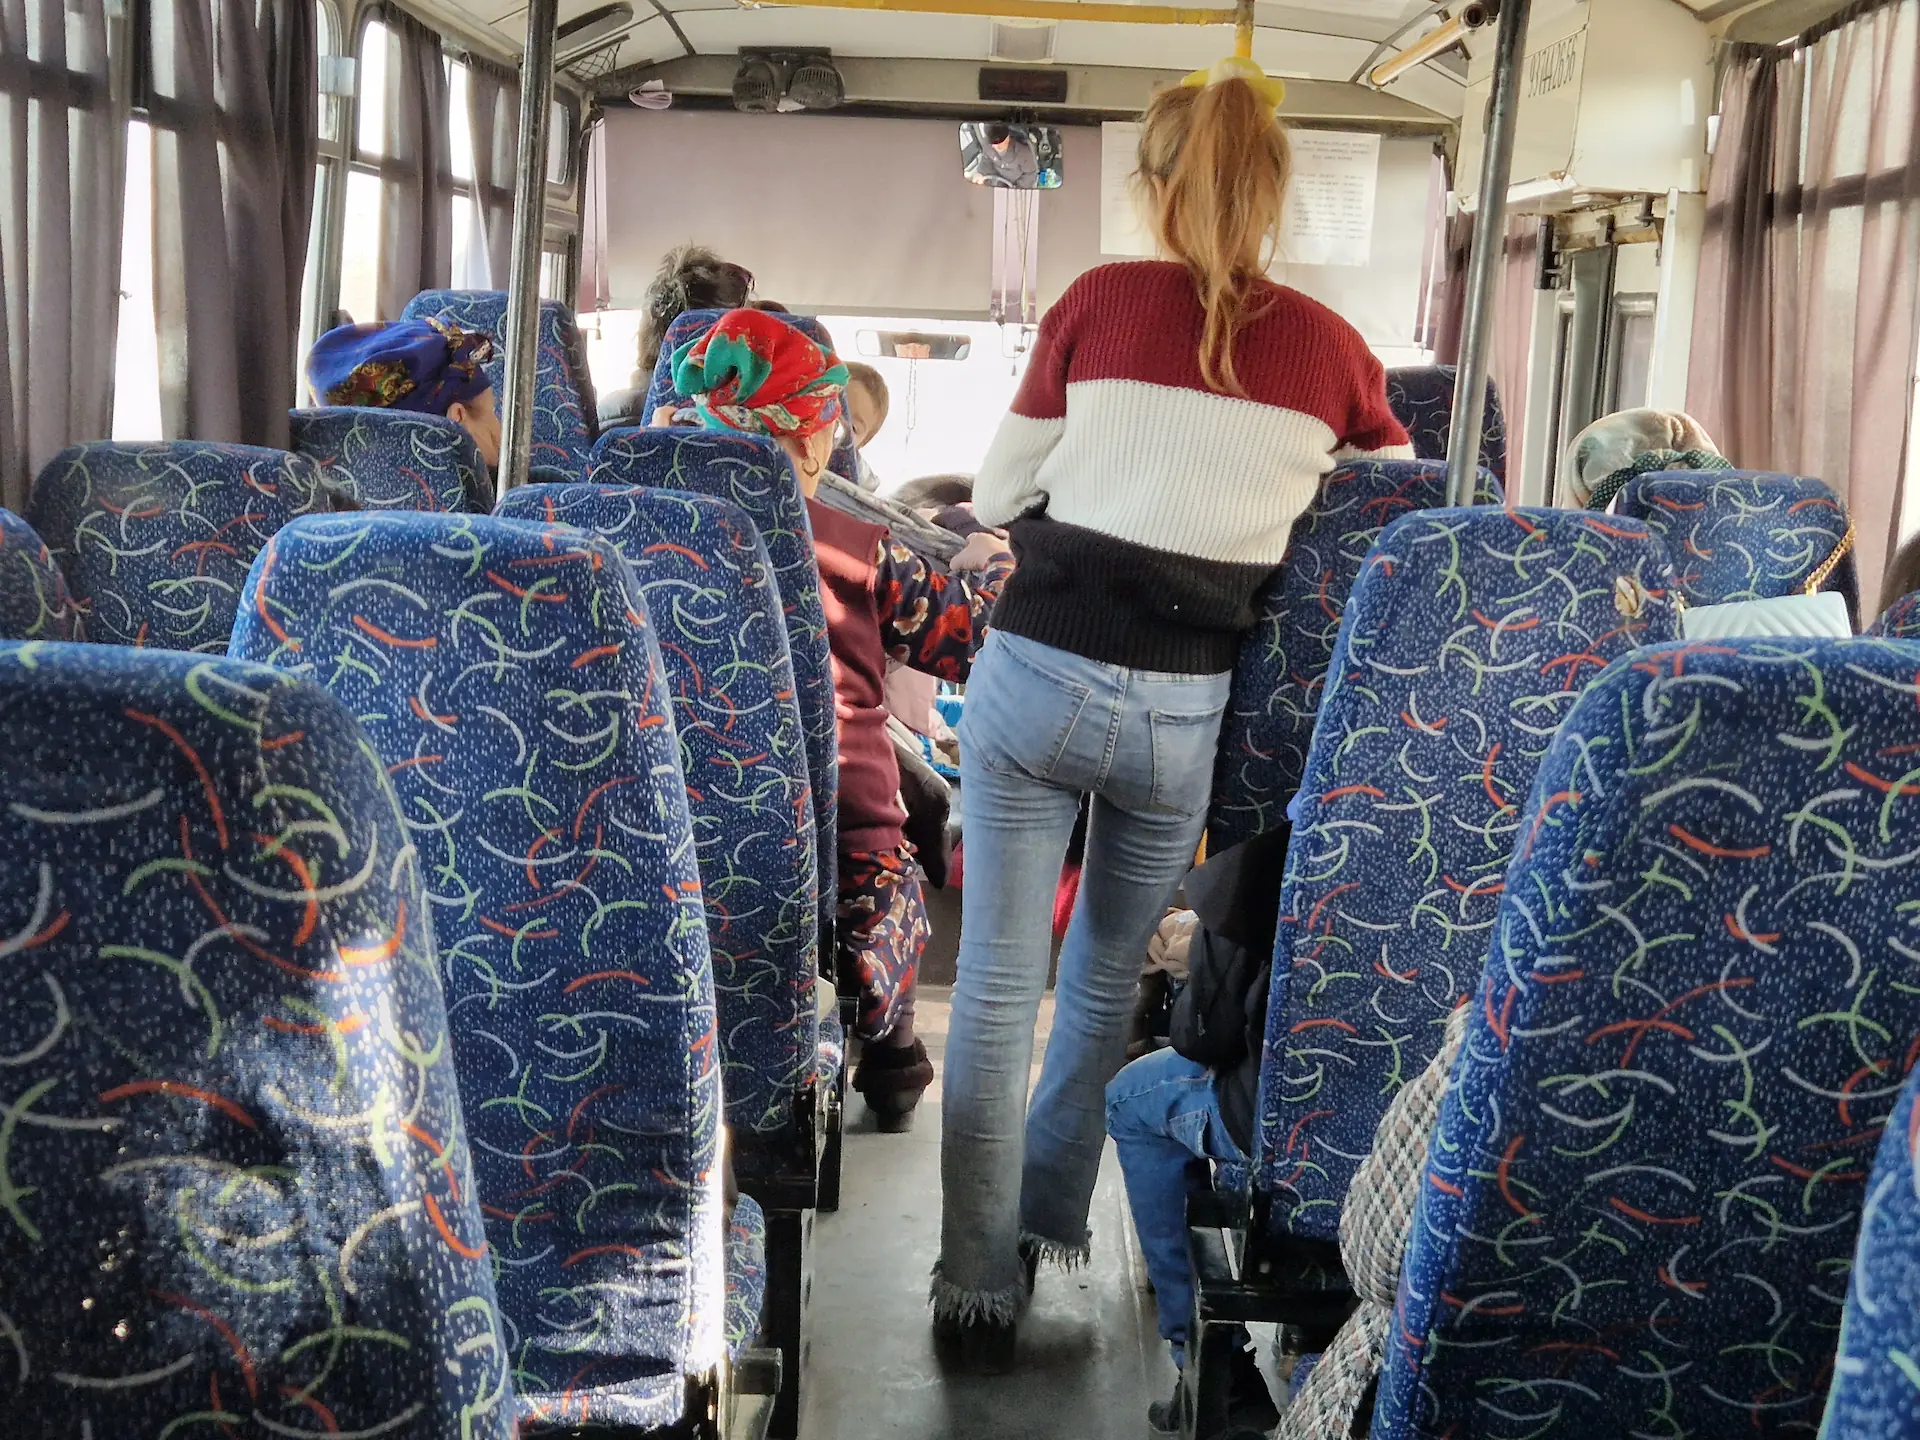 On est assis à l'arrière du bus et on voit les passagères à l'avant : deux grand-mères aux foulards colorés sur la tête et une jeune femme debout dans le couloir.